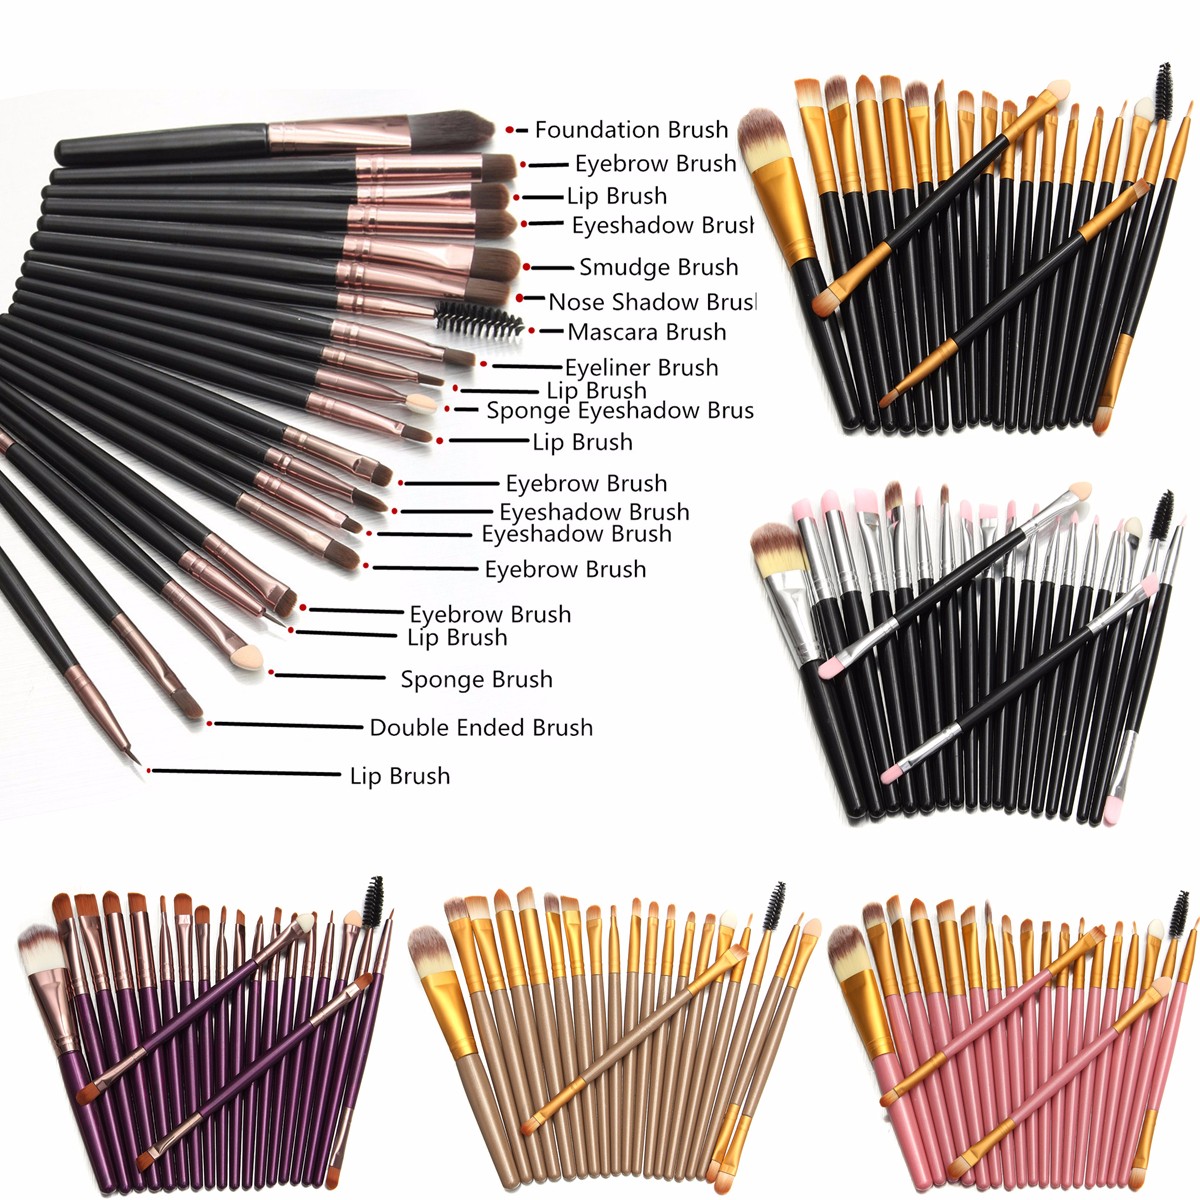 20pcs-Makeup-Brushes-Set-Kit-Blush-Foundation-Liquid-Eyeshadow-Eyeliner-Comestic-Powder-1108177